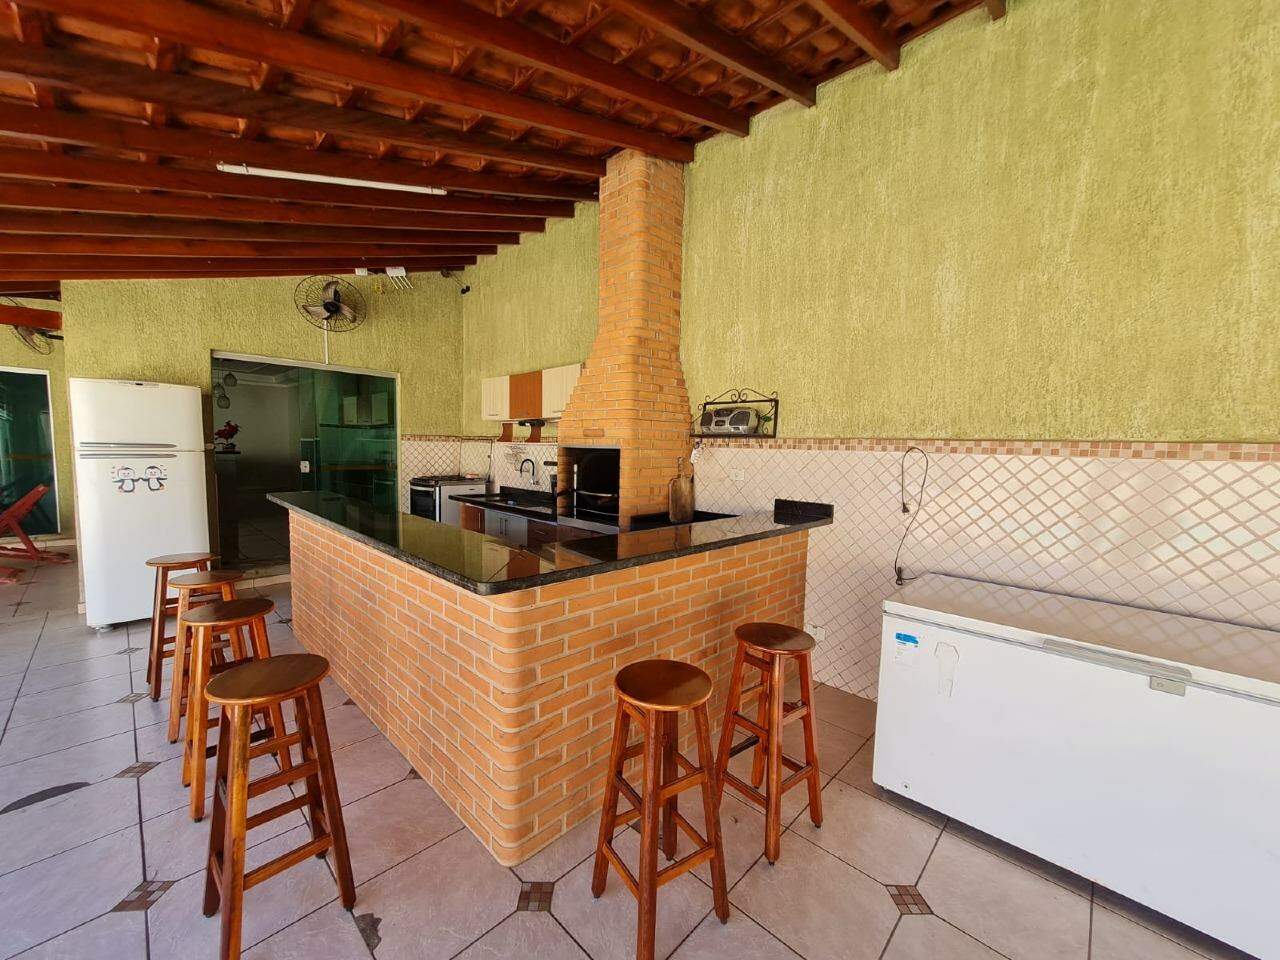 Casa para alugar, 2 quartos, 5 vagas, no bairro Residencial Santo Antônio em Piracicaba - SP